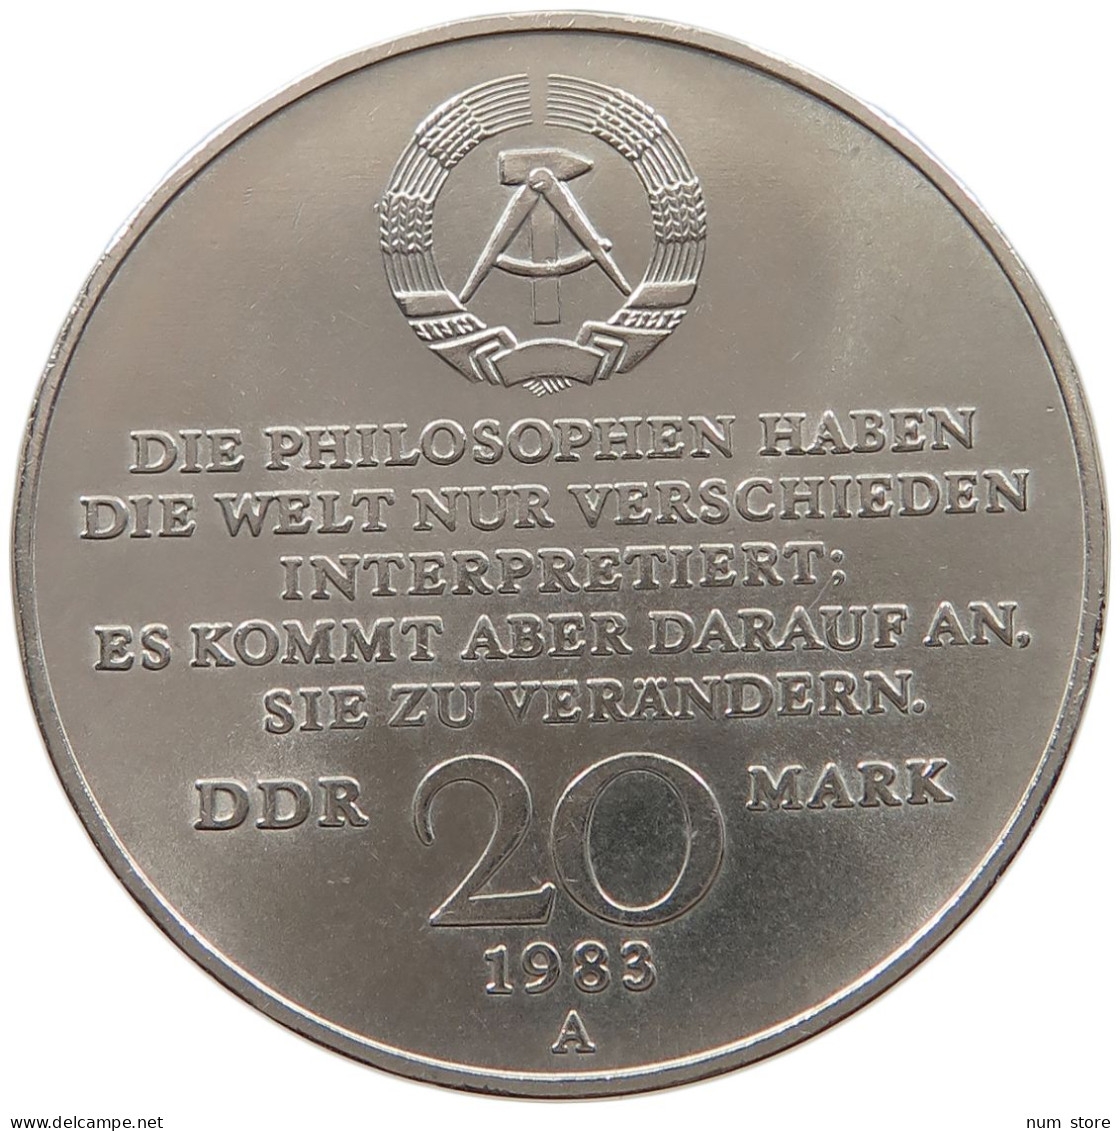 GERMANY DDR 20 MARK 1983 Karl Marx #a060 0537 - 20 Marchi